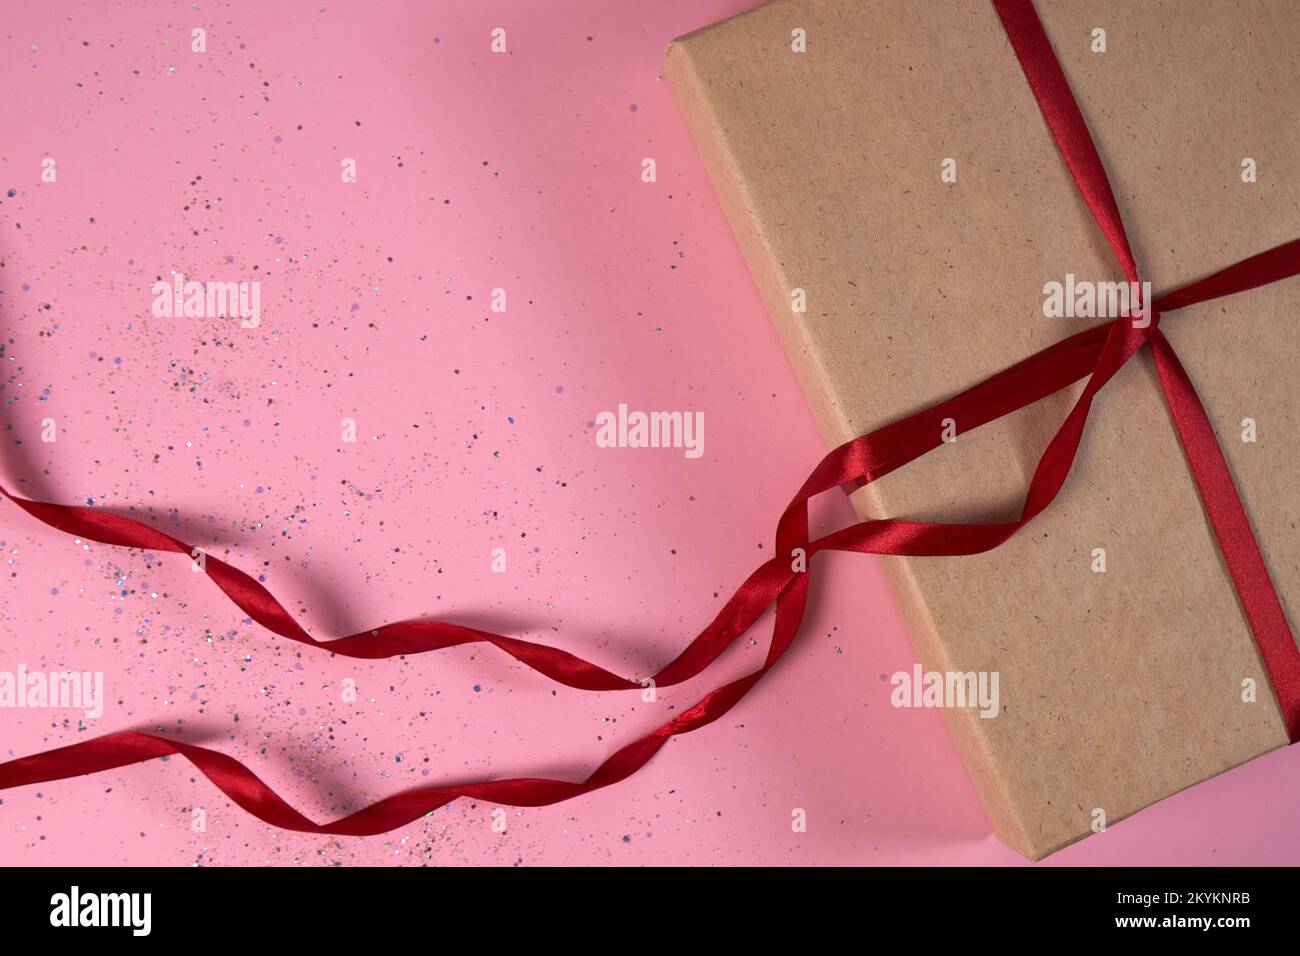 Confezione regalo in carta kraft con nastri di raso rosso su sfondo rosa con paillettes. Il concetto di Capodanno, Natale, Vacanze, San Valentino, matrimonio. Foto Stock